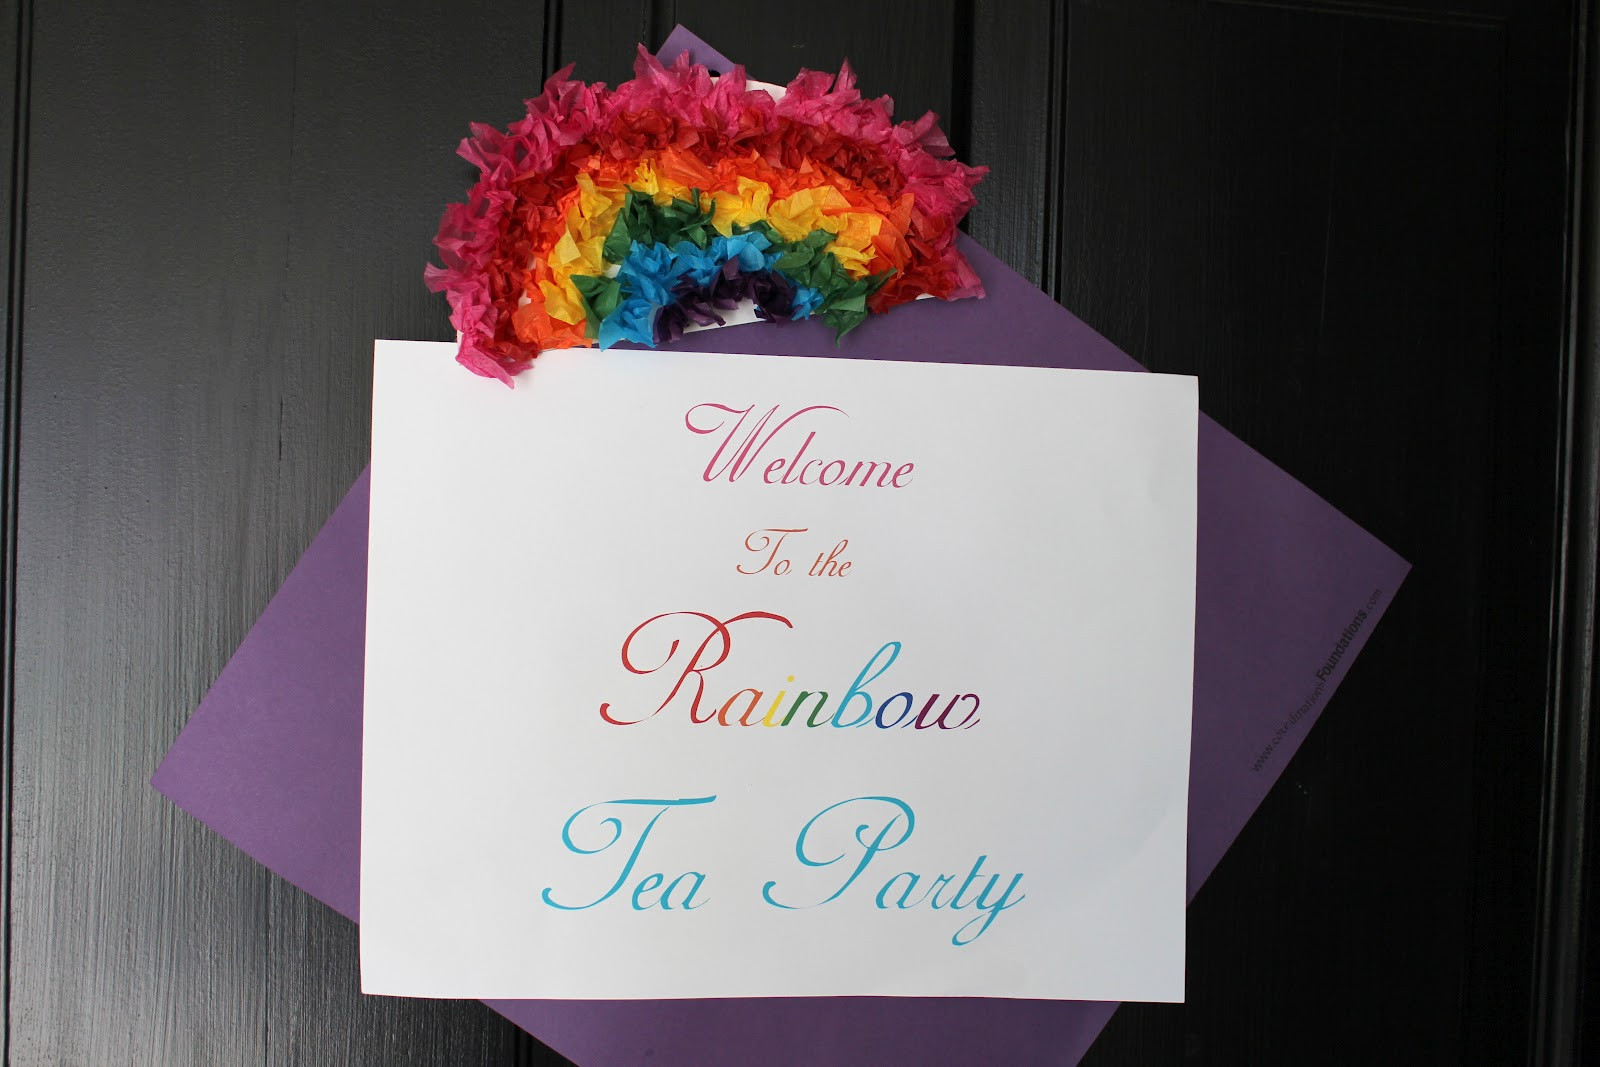 Rainbow Tea Party Ideas
 Not My Own The Rainbow Tea Party